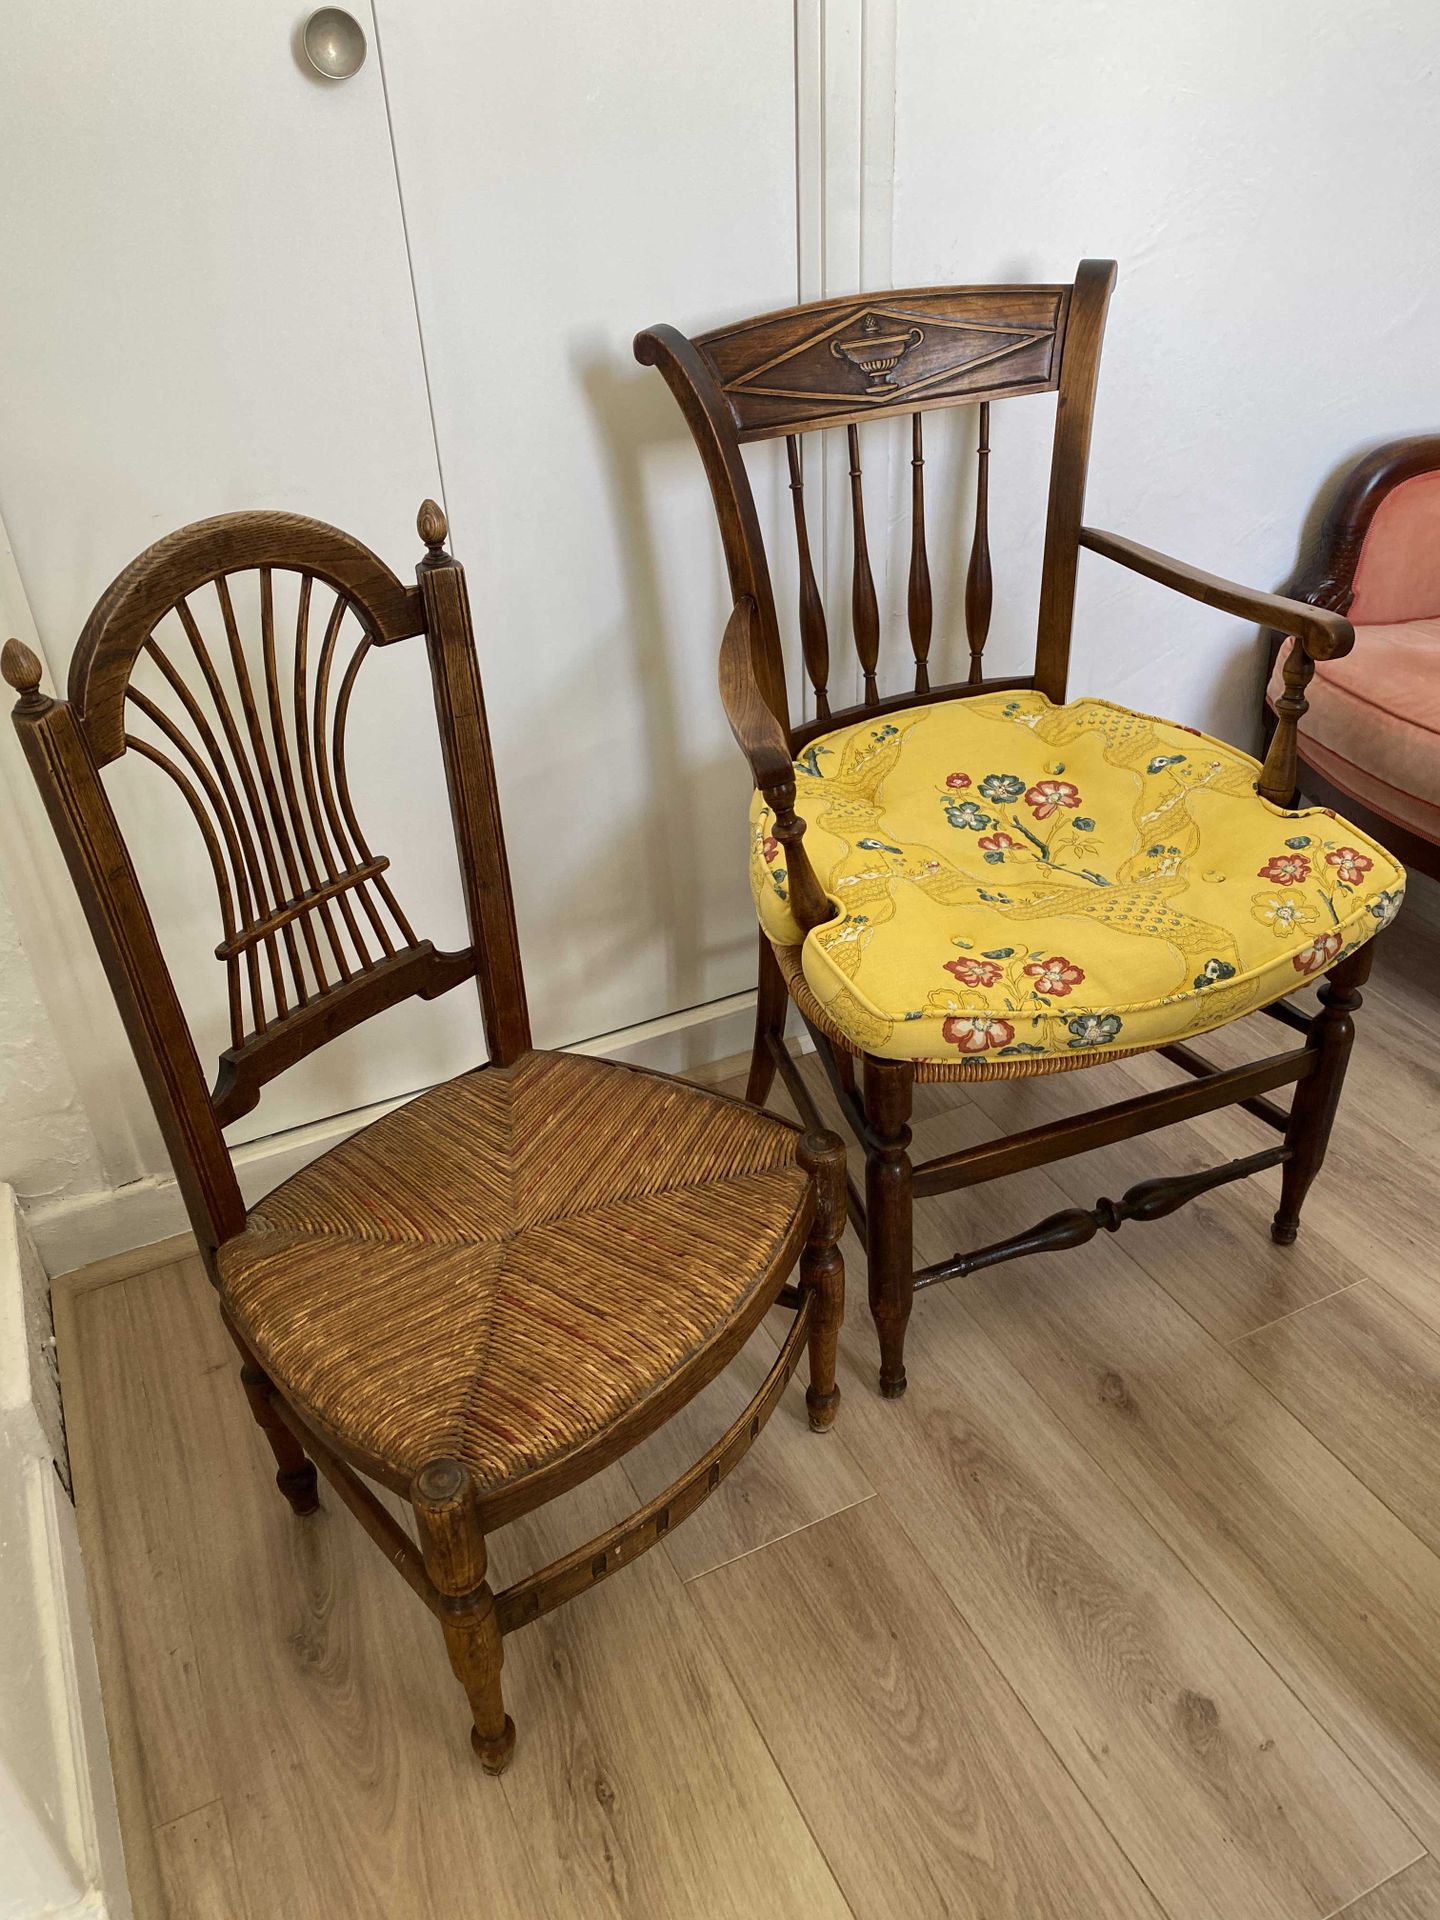 Null Lot comprenant un fauteuil et une chaise paillés

XIXe siècle